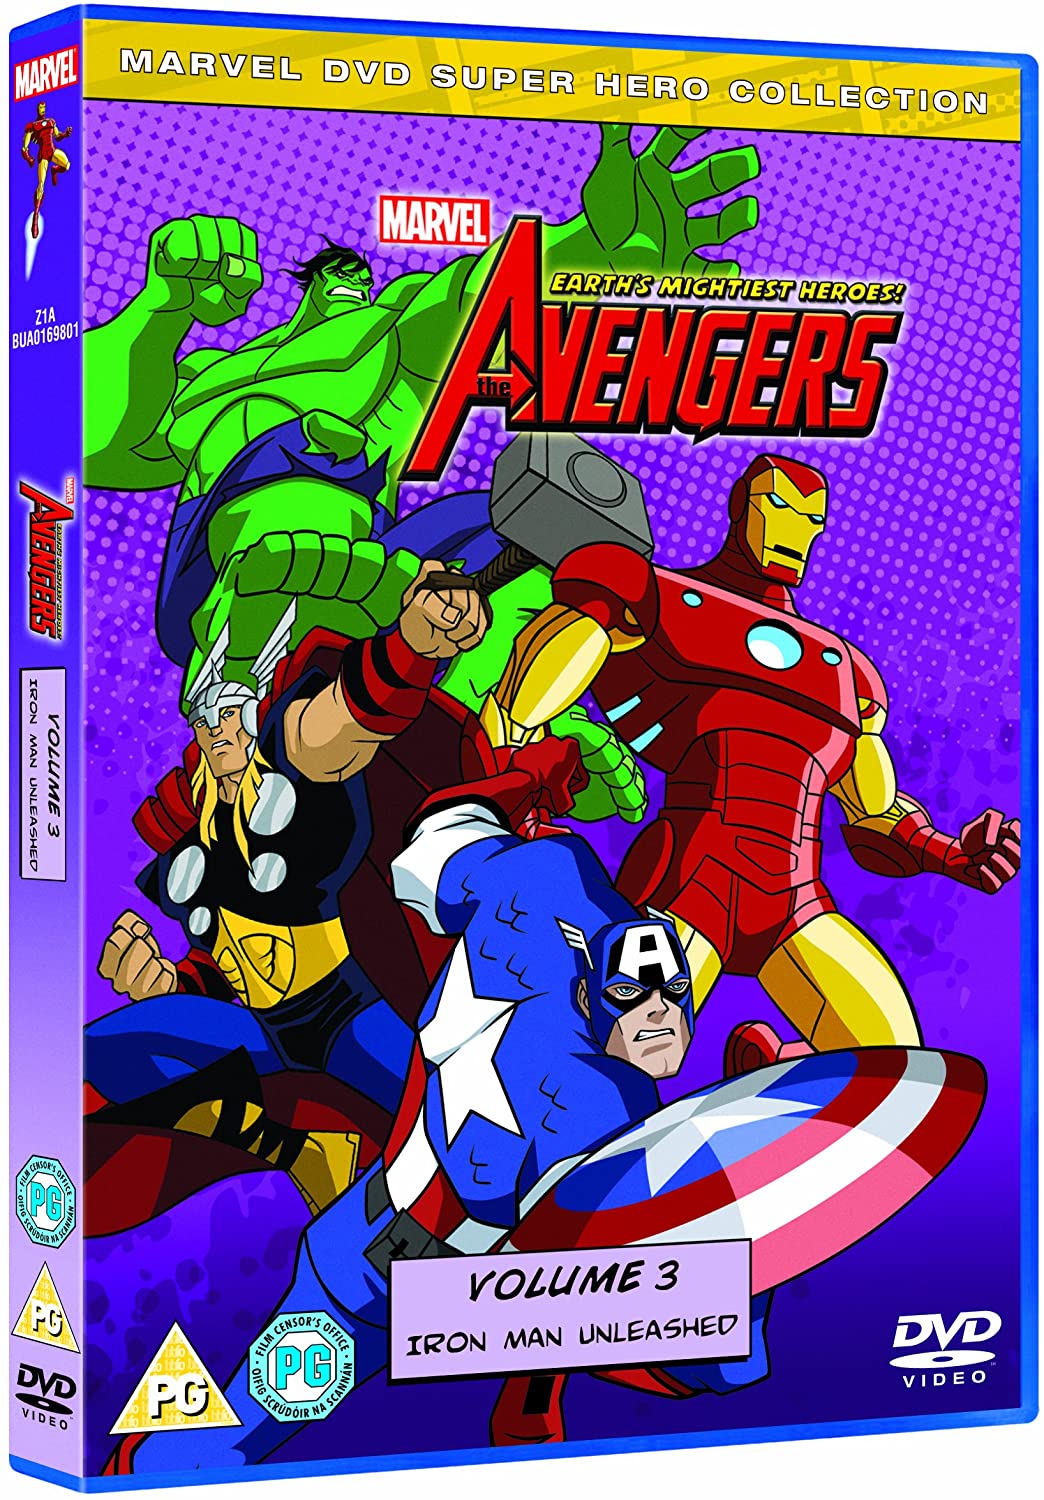 Avengers: Earth's Mightiest Heroes Volume 3